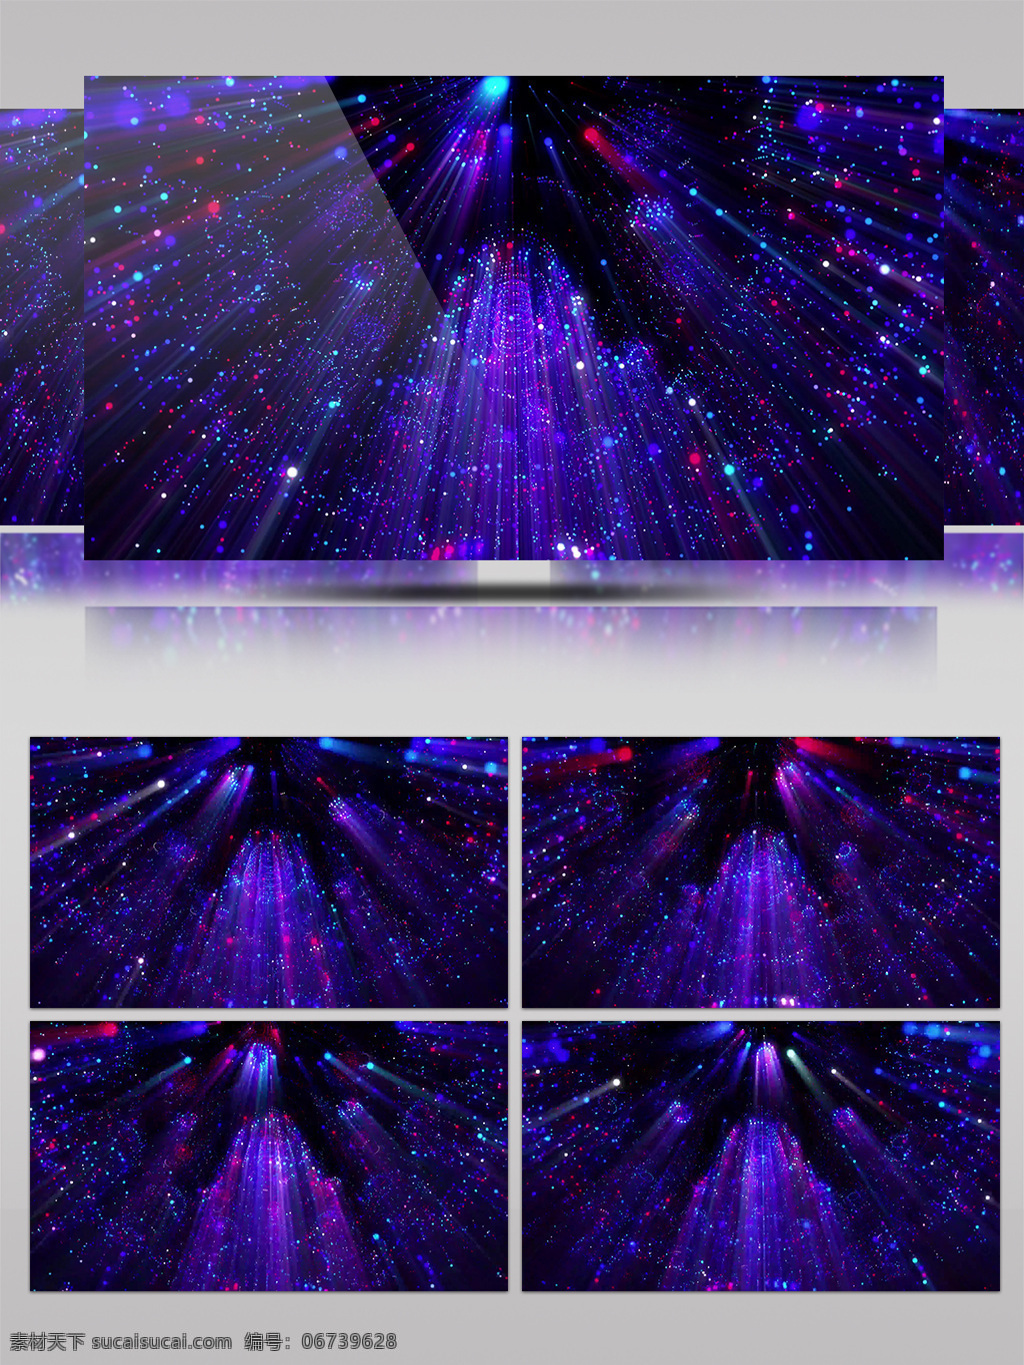 4k 炫 酷 紫色 粒子 扫 光 舞台 led 背景 视频 动感 浪漫 酷炫 宇宙 空间